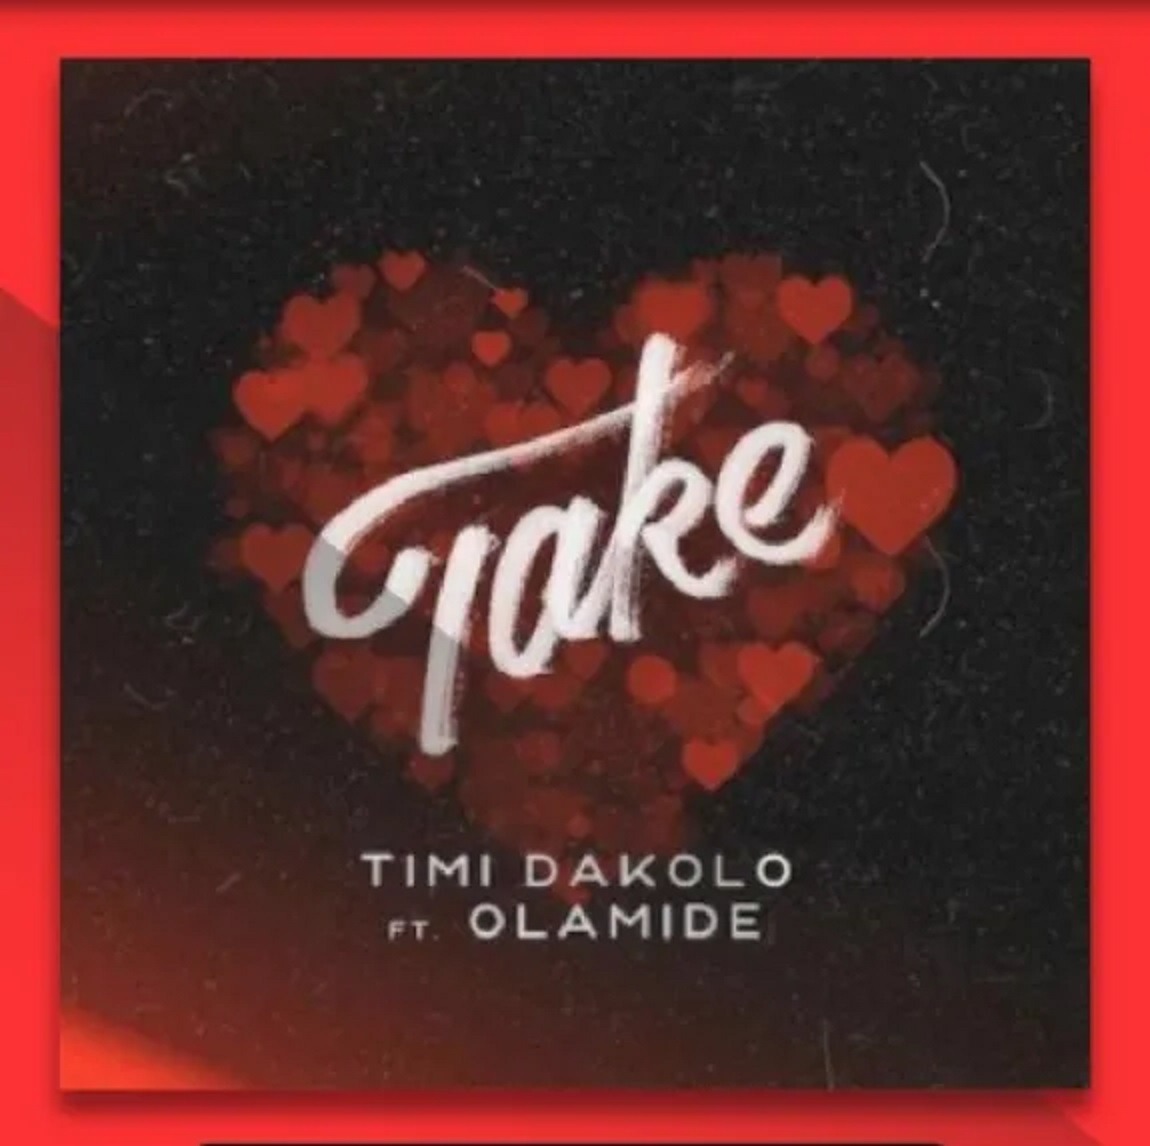 Timi Dakolo Take (ft. Olamide) (prod. Pheelz)